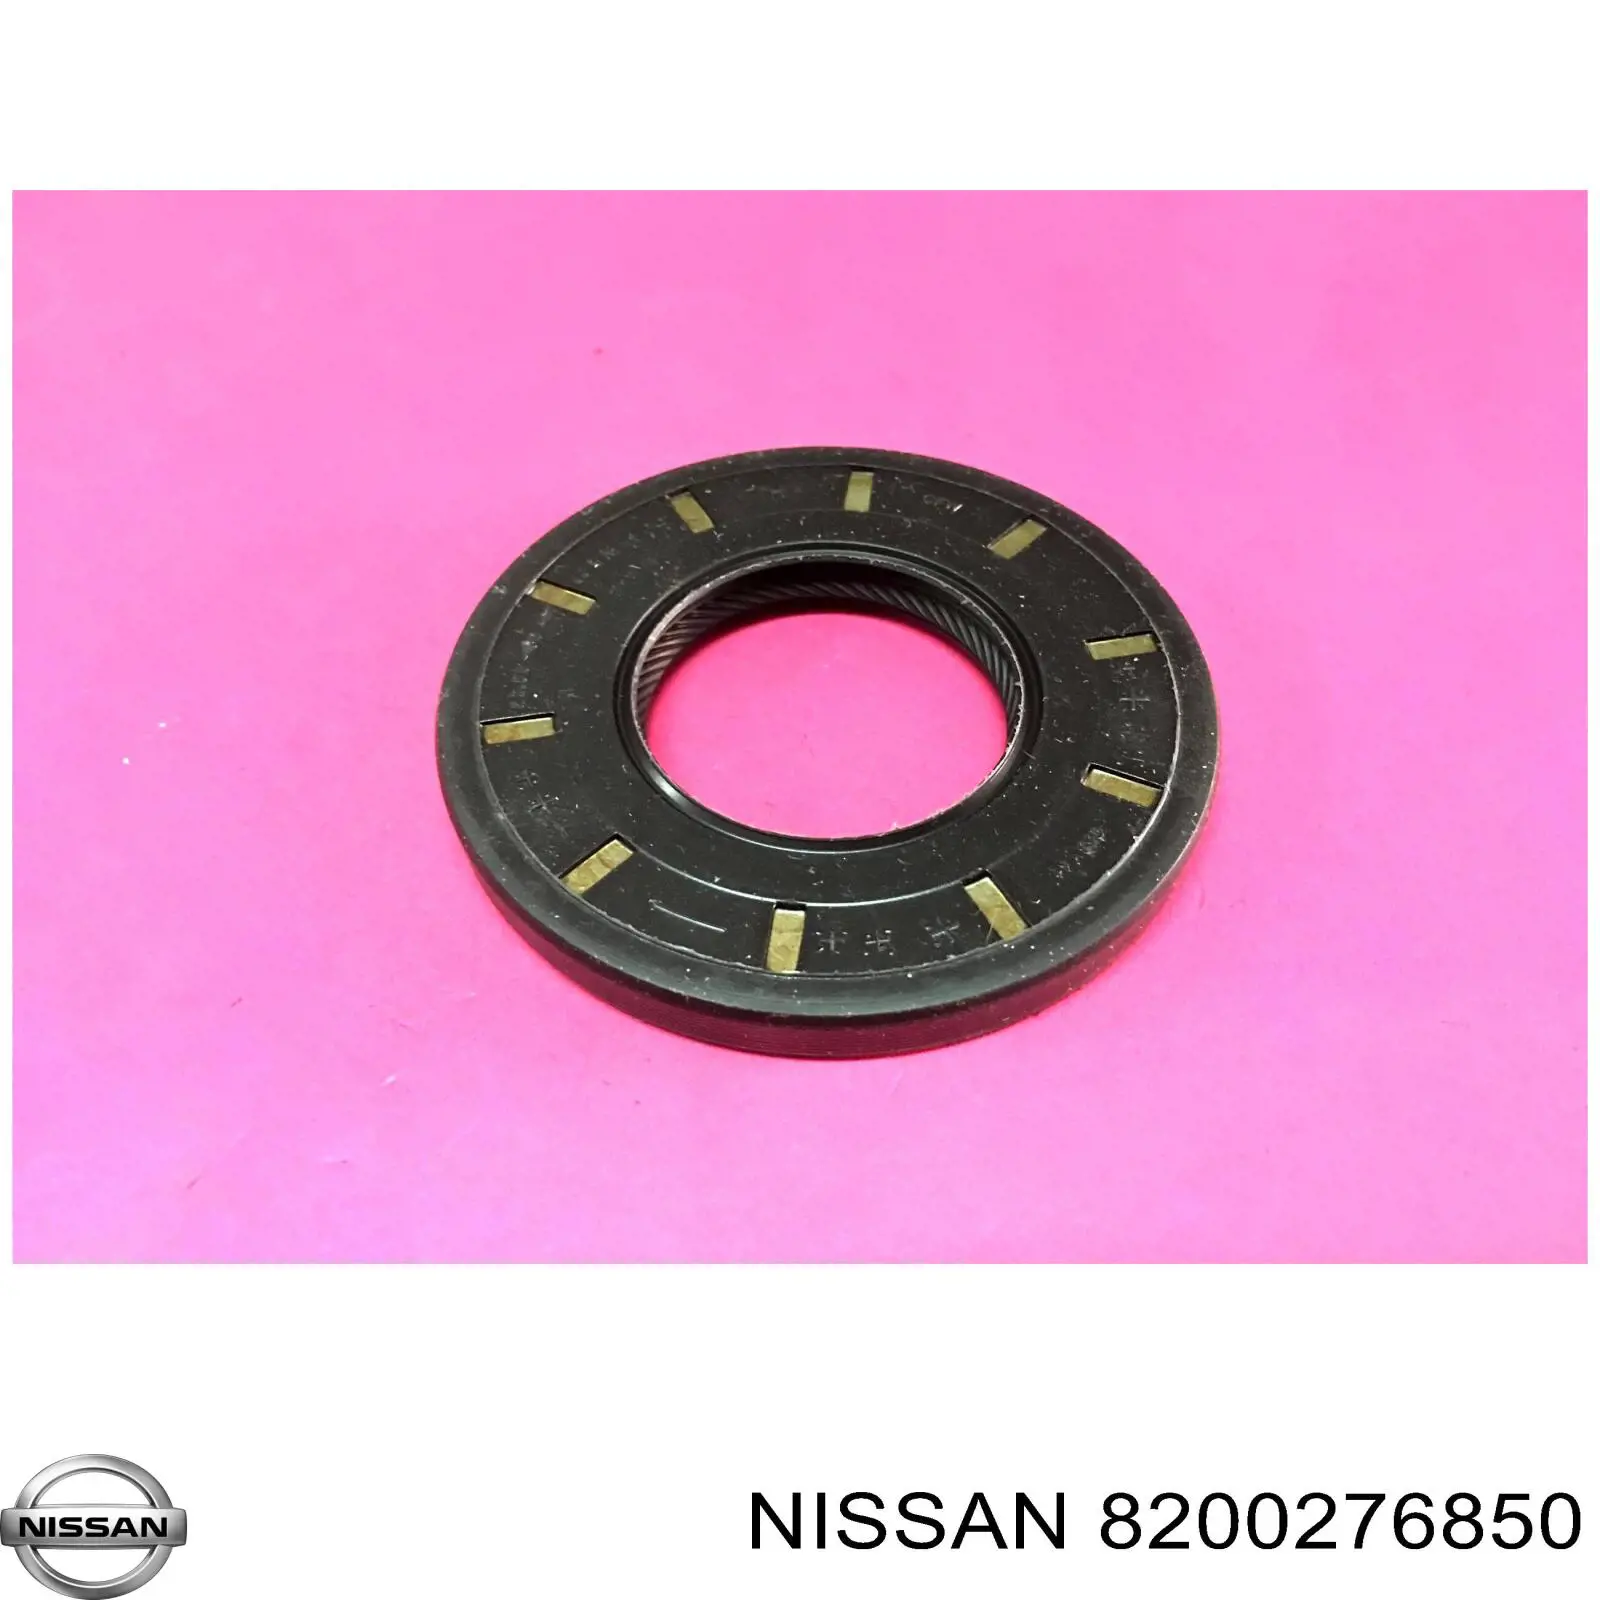 8200276850 Nissan anillo retén de semieje, eje delantero, derecho